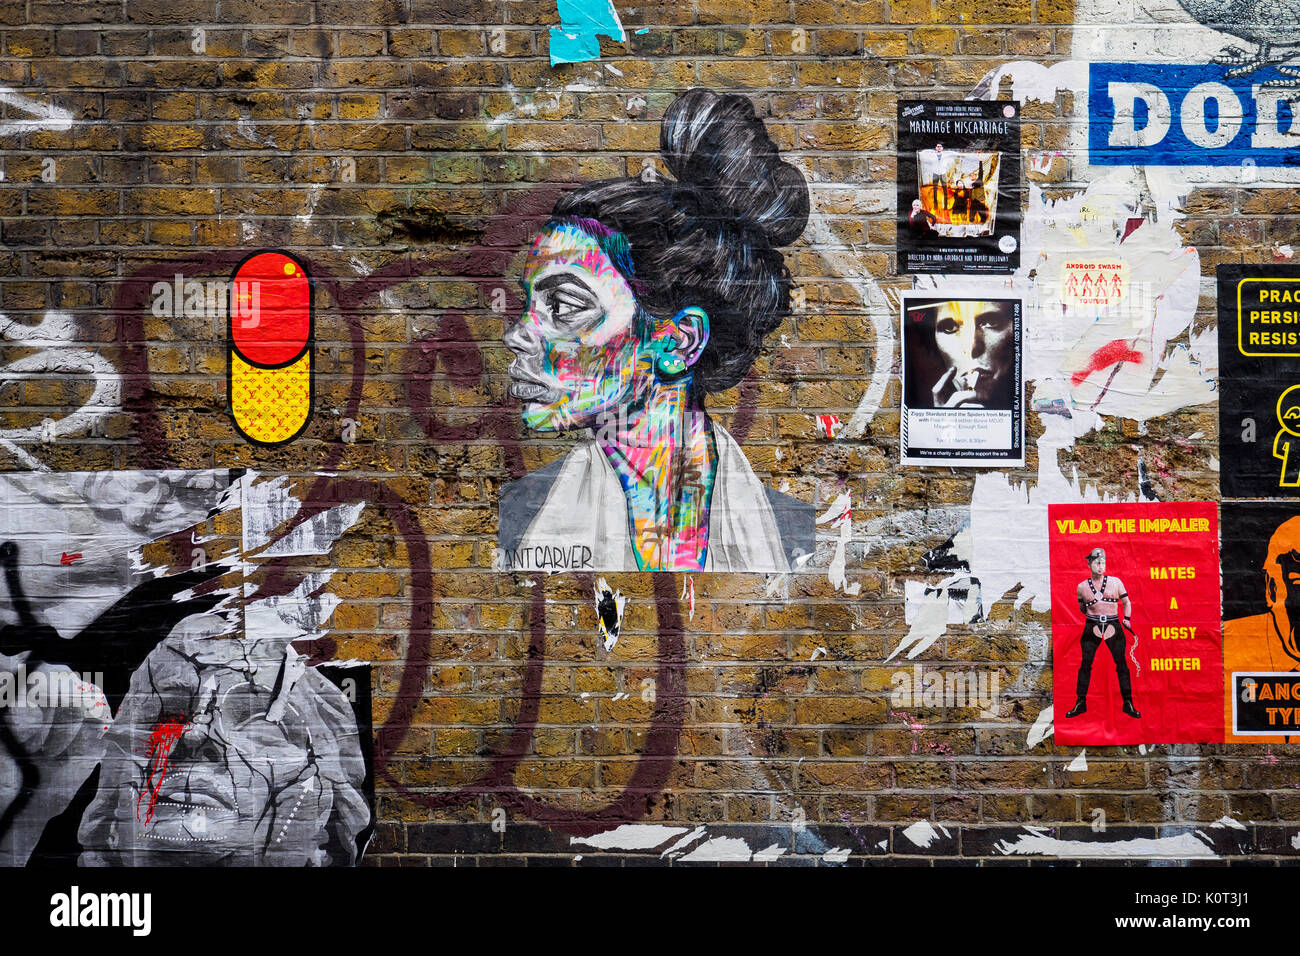 Art graffiti in Brick Lane. Shoreditch, London (UK). Stock Photo